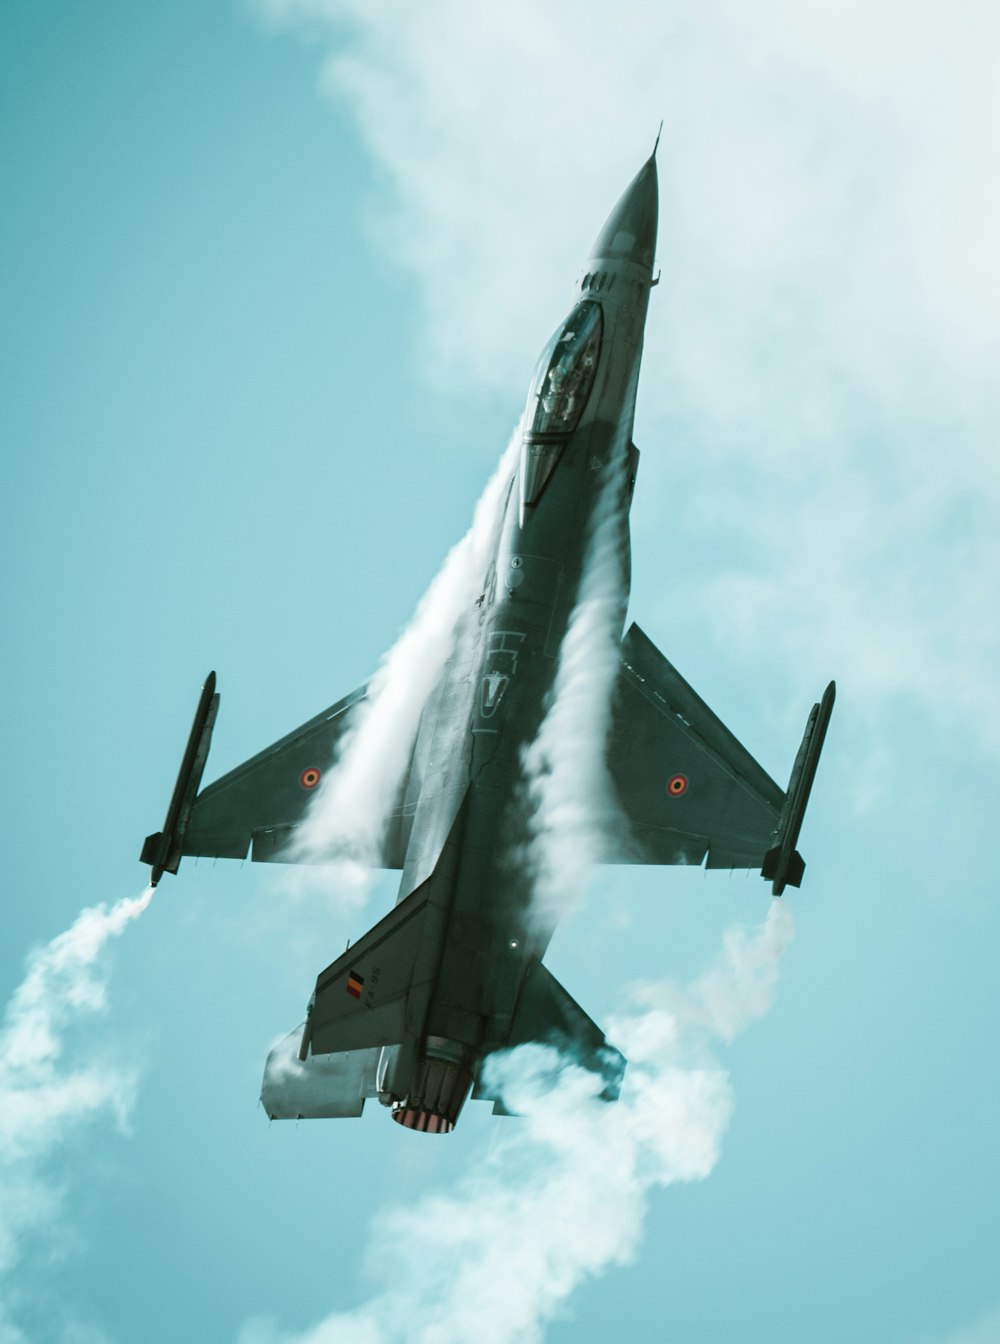 Un avión de combate volando a través de un cielo azul nublado